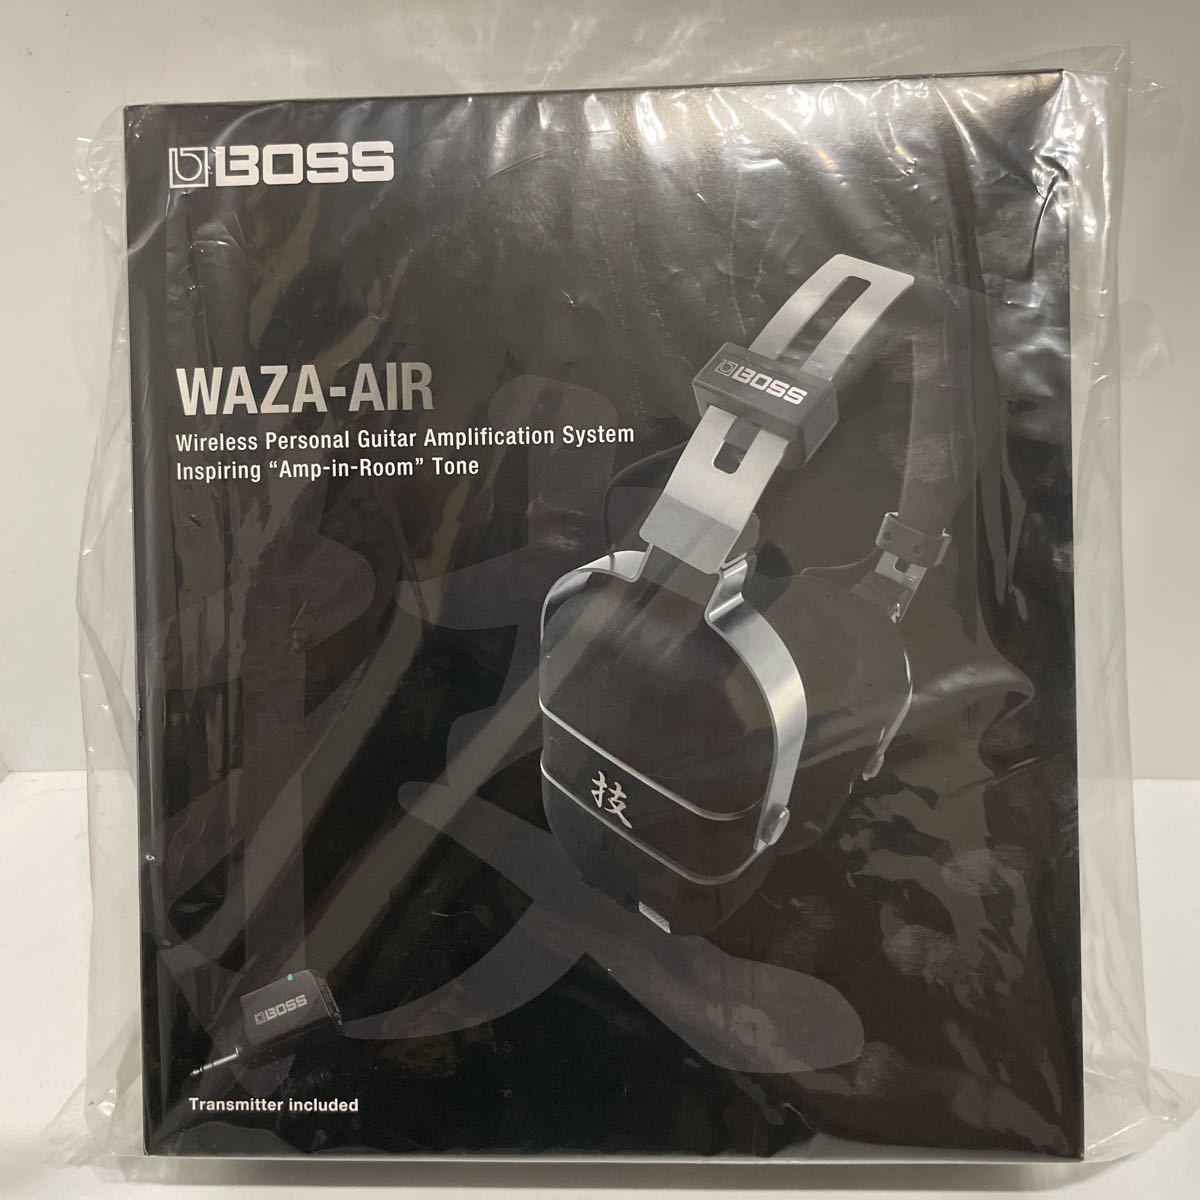 BOSS ボス/技 WAZA-AIR ワイヤレス・ギター・ヘッドホン・システム